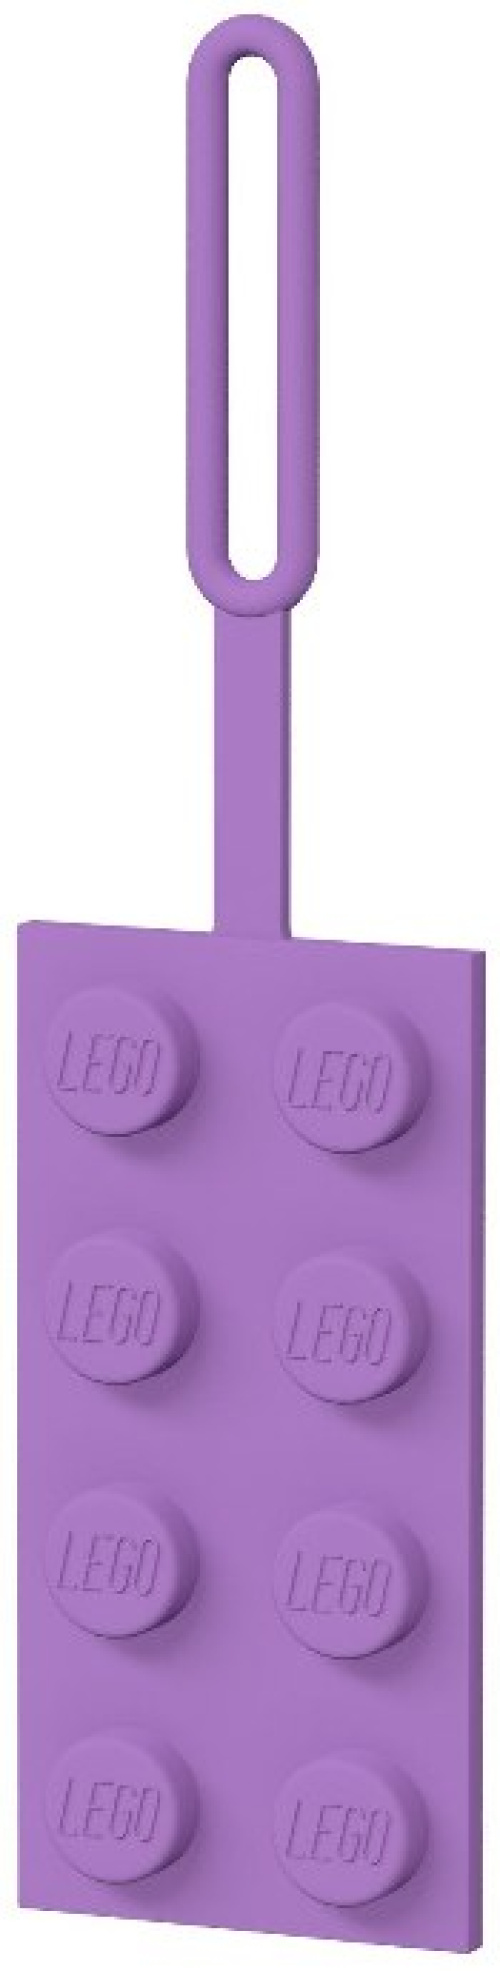 5005620-1 2x4 Lavender Luggage Tag